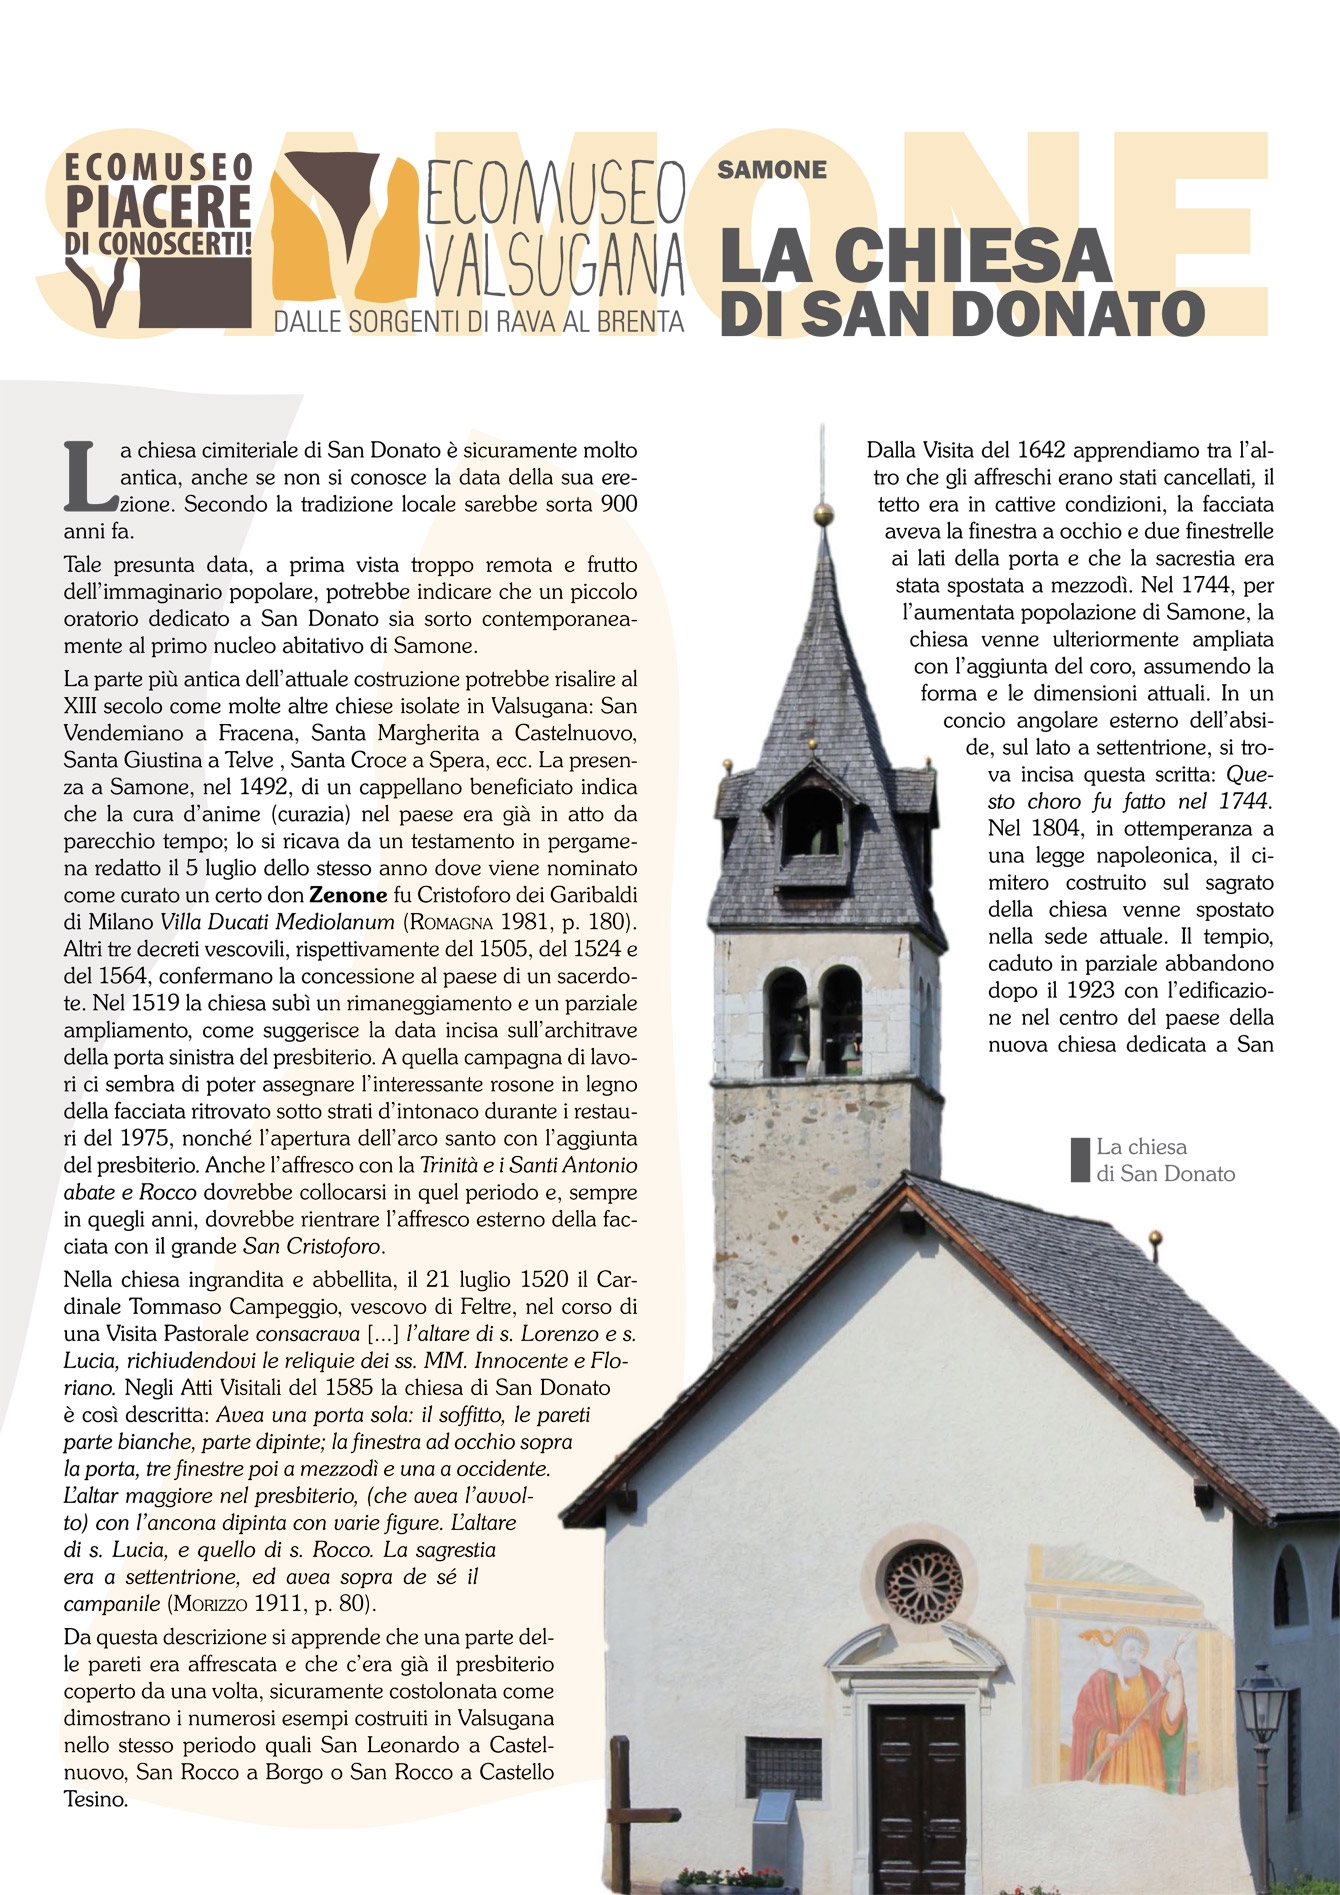 Samone: la chiesa di San Donato